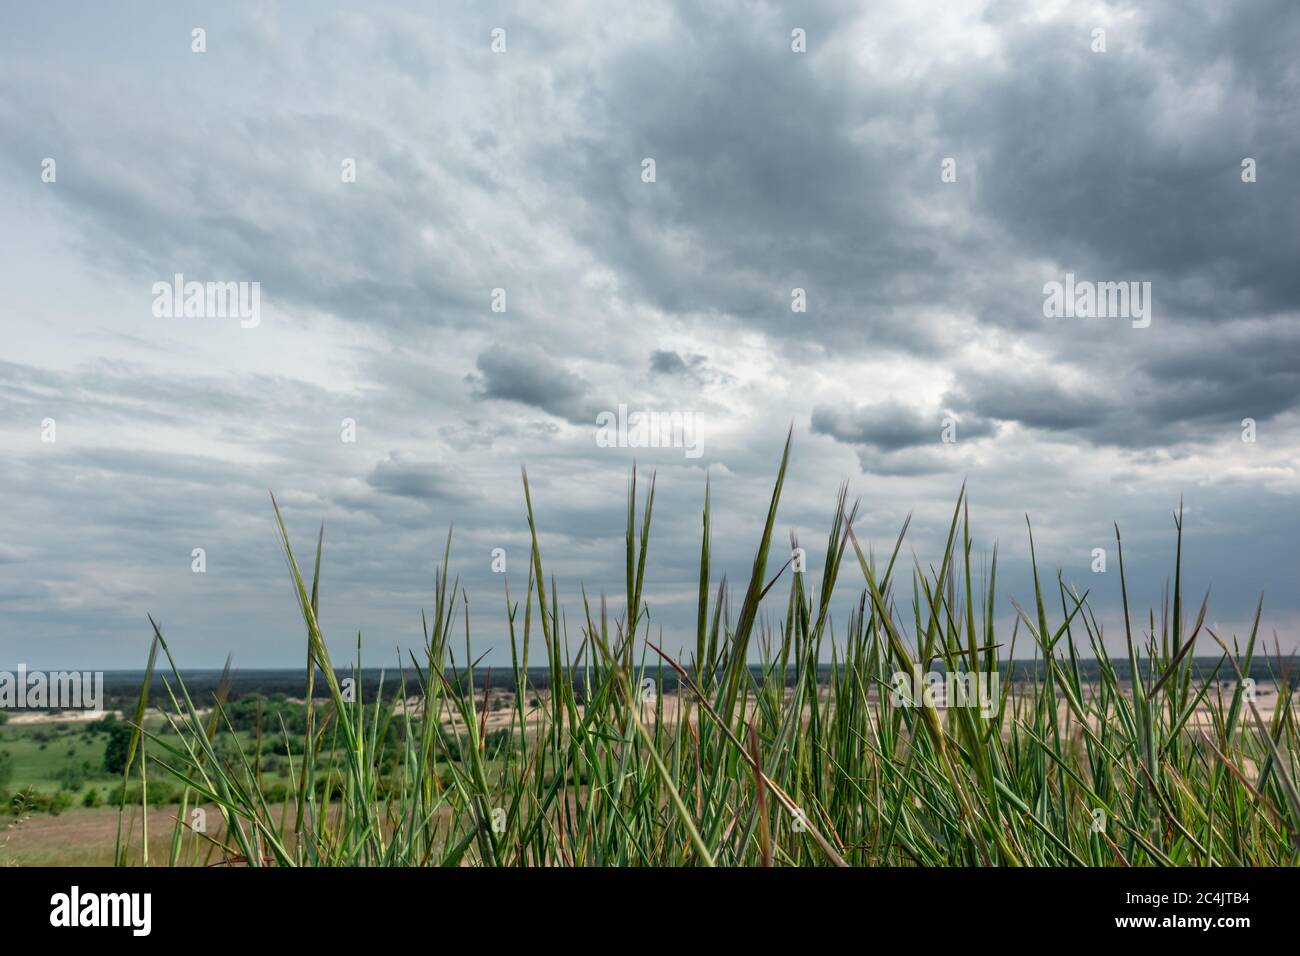 Herbe verte vive avec ciel gris spectaculaire. Kitsevka désert de sable vallonné en Ukraine, région de Kharkiv paysage Banque D'Images